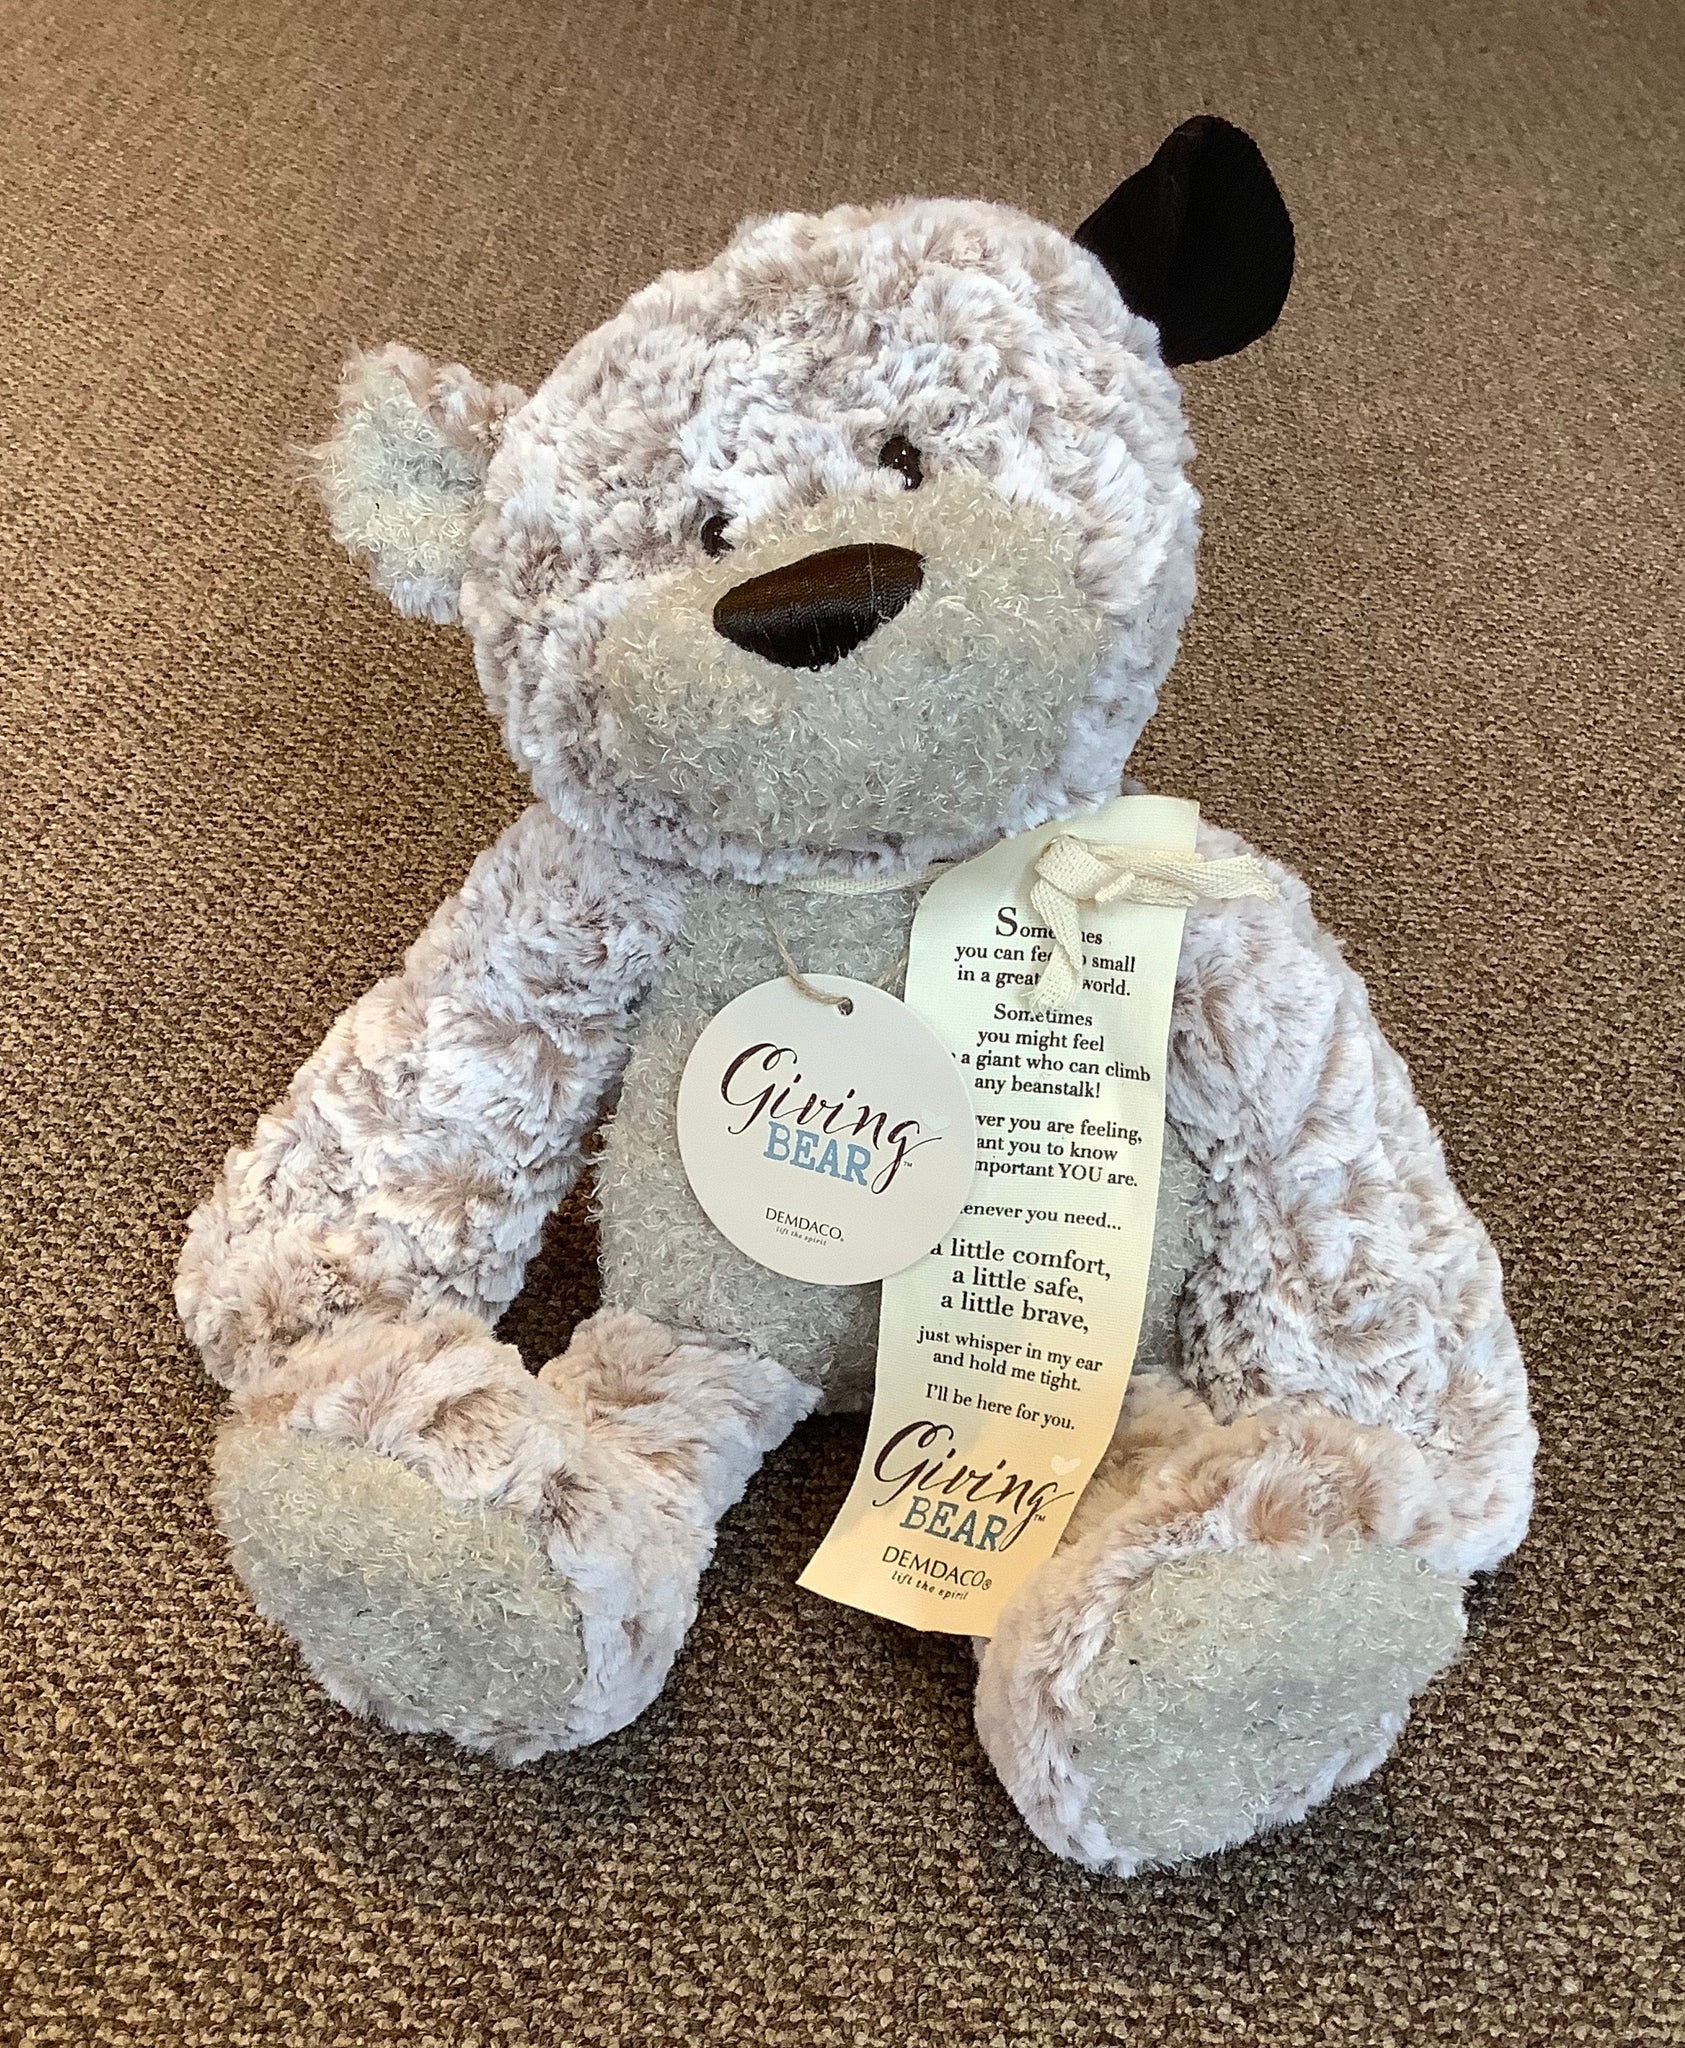 Giving Teddy Bear